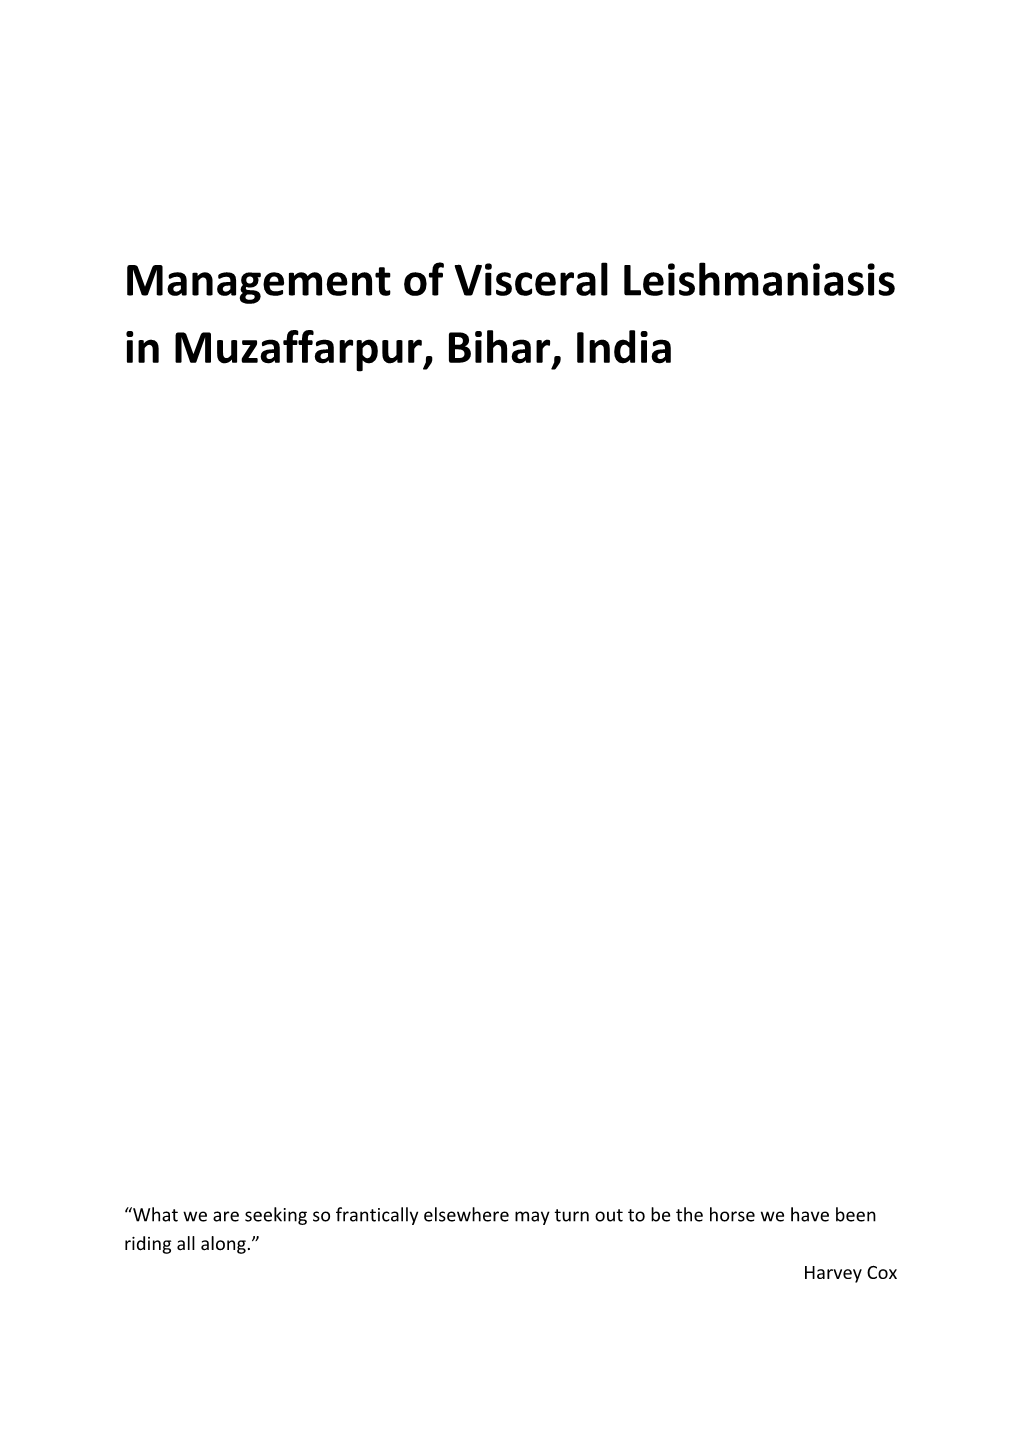 Management of Visceral Leishmaniasis in Muzaffarpur, Bihar, India